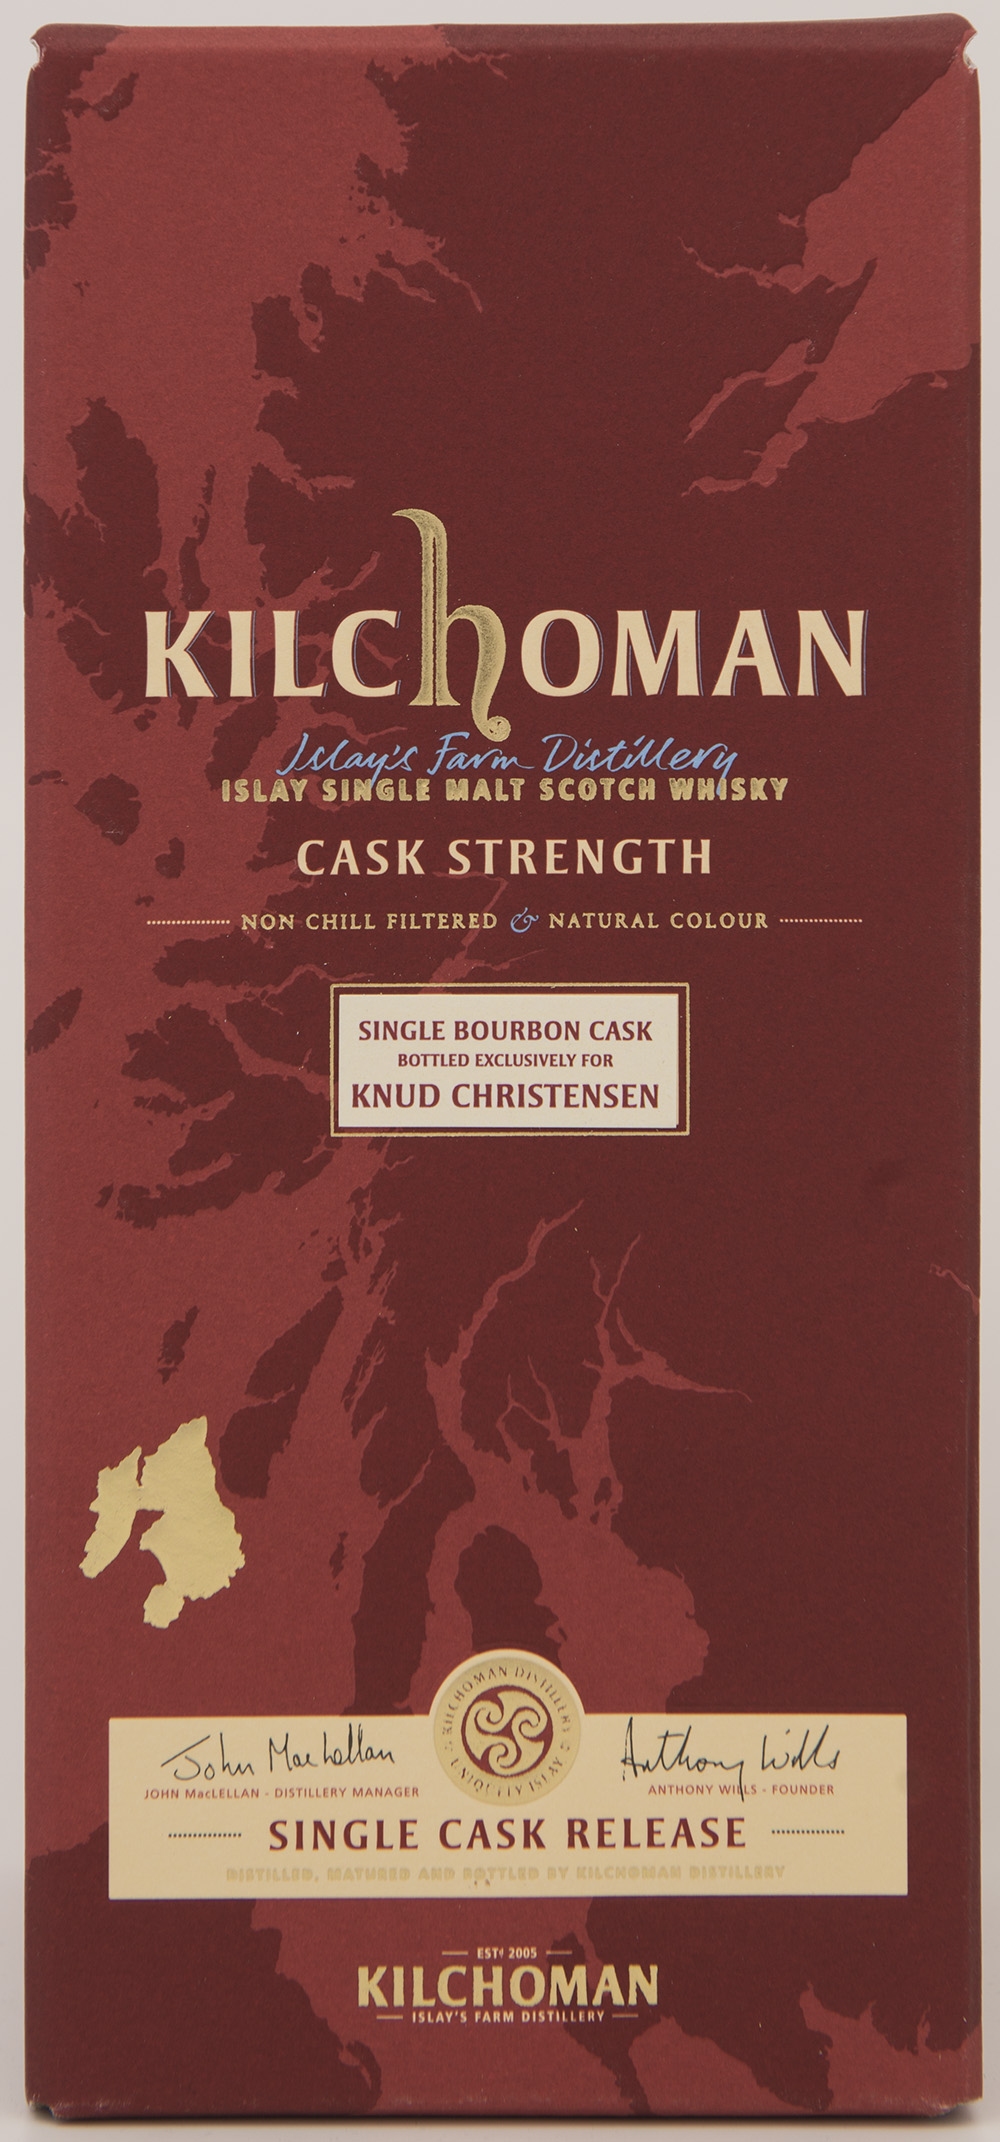 Billede: DSC_1417 - Kilchoman Private Cask Release 94 2006 - box front.jpg